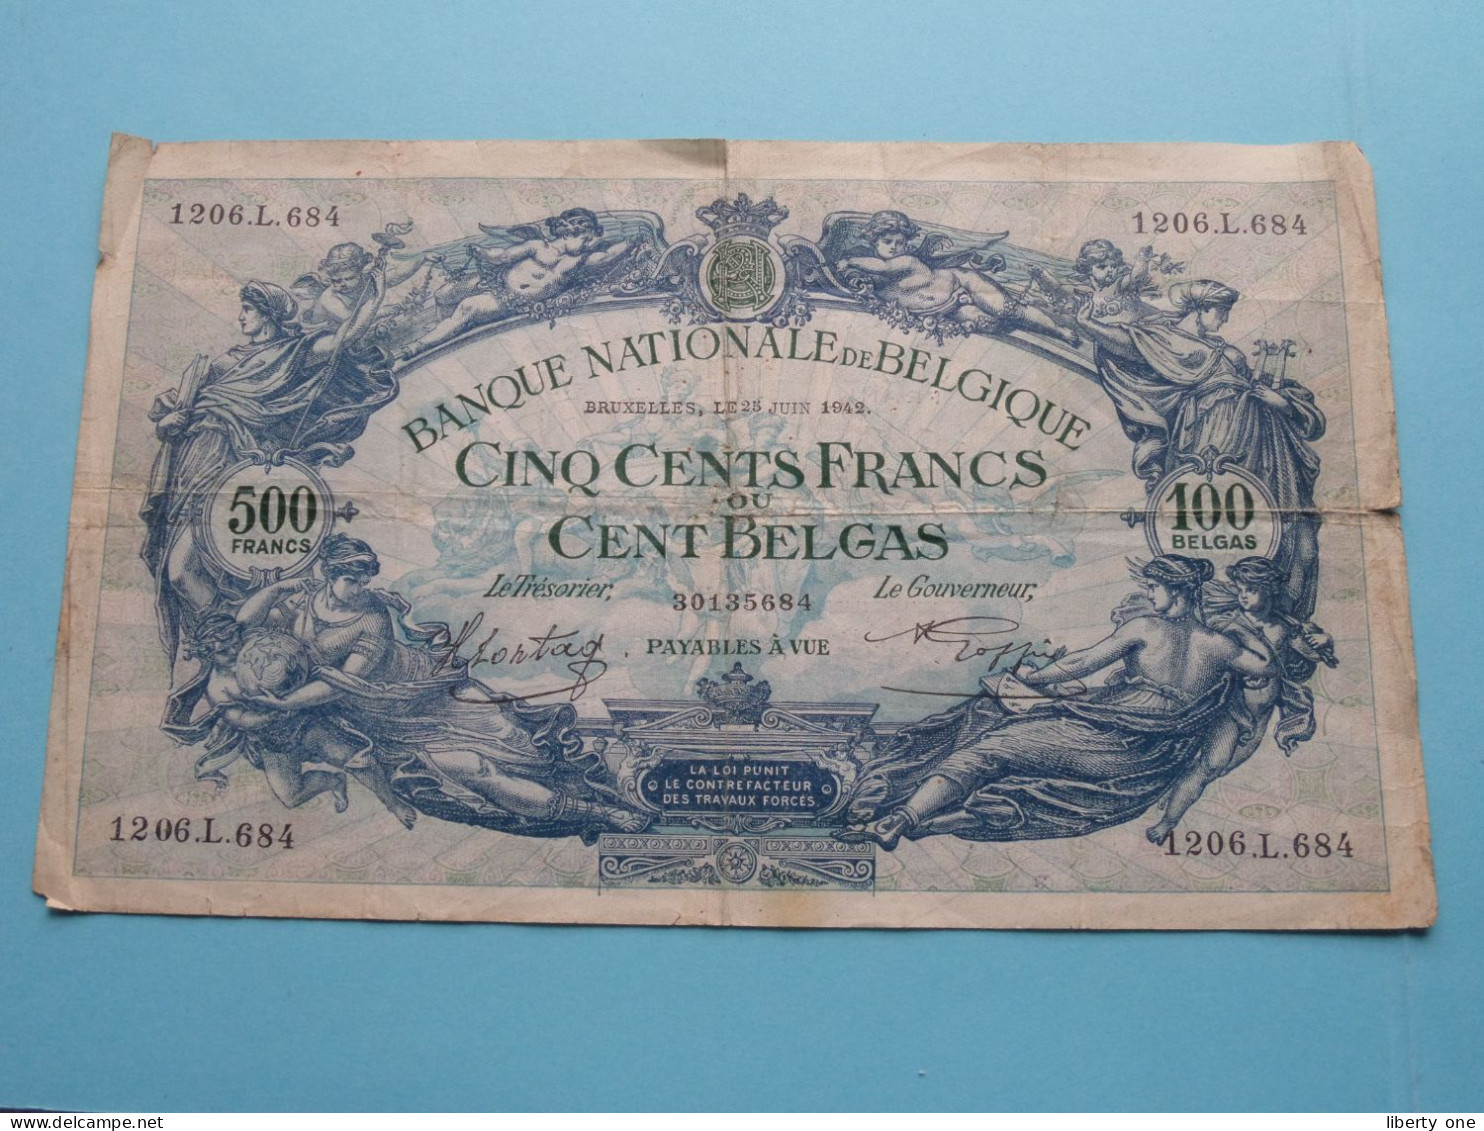 500 Cent Francs / 100 Belgas 1206.L.684/30135684 > 25 Juin 1942 ( Zie SCANS Voor Detail ) België / Belgique / Belgium ! - 500 Frank-100 Belgas